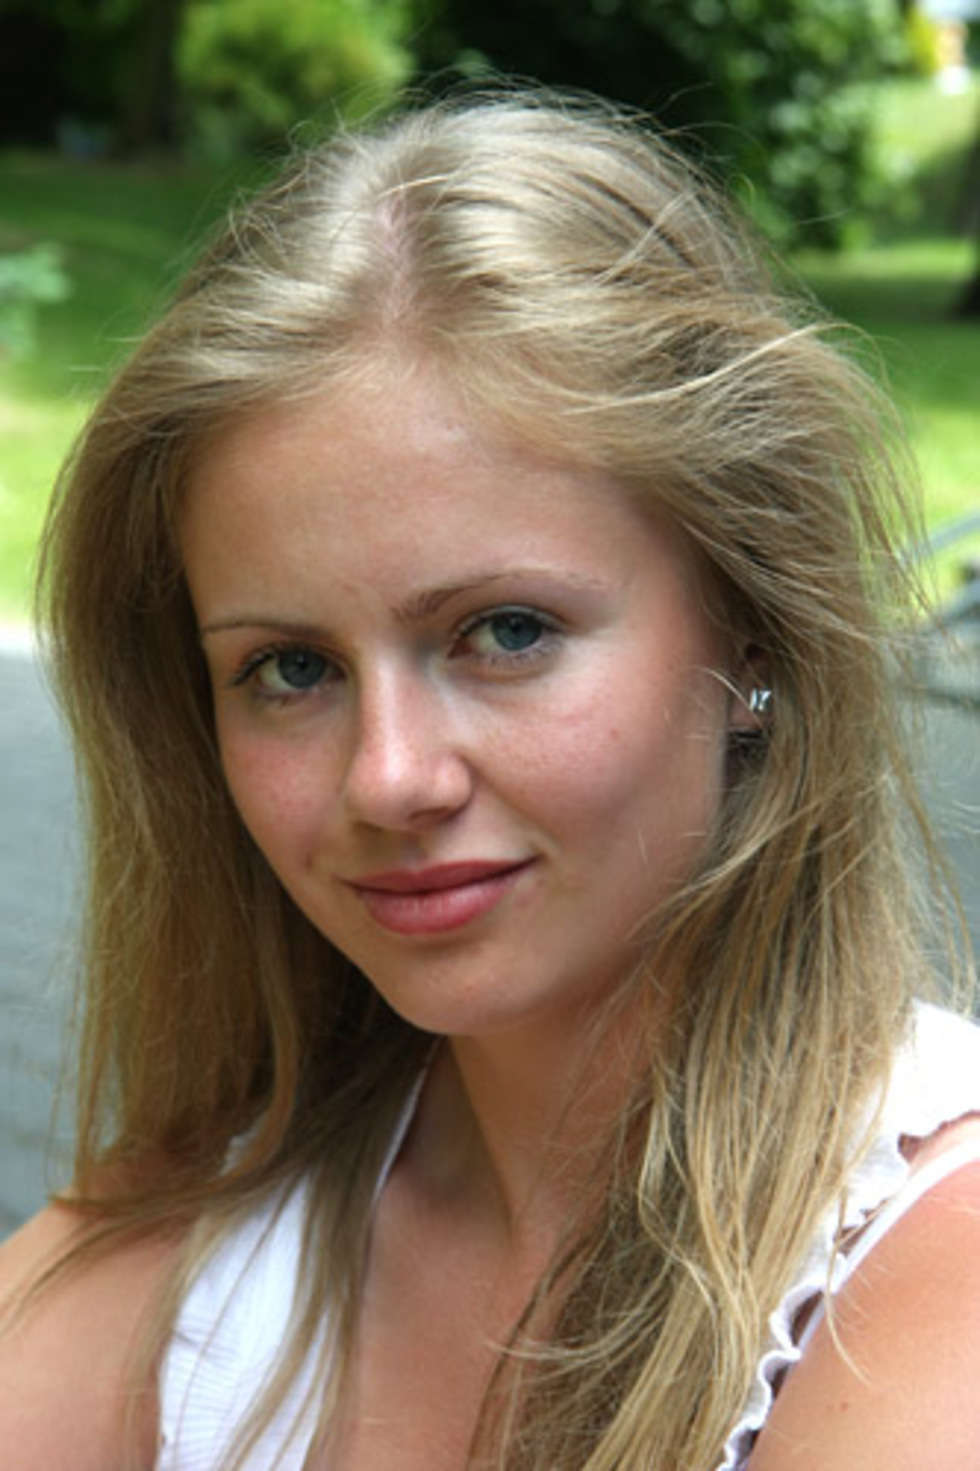  Olga Szewczuk z Lublina, 17 lat. Jeśli chcesz oddac glos na Olge wyślij SMS o treści <b>DW MISS 6</b> pod numer 7168. Koszt wyslania - 1,22 zl z VAT
